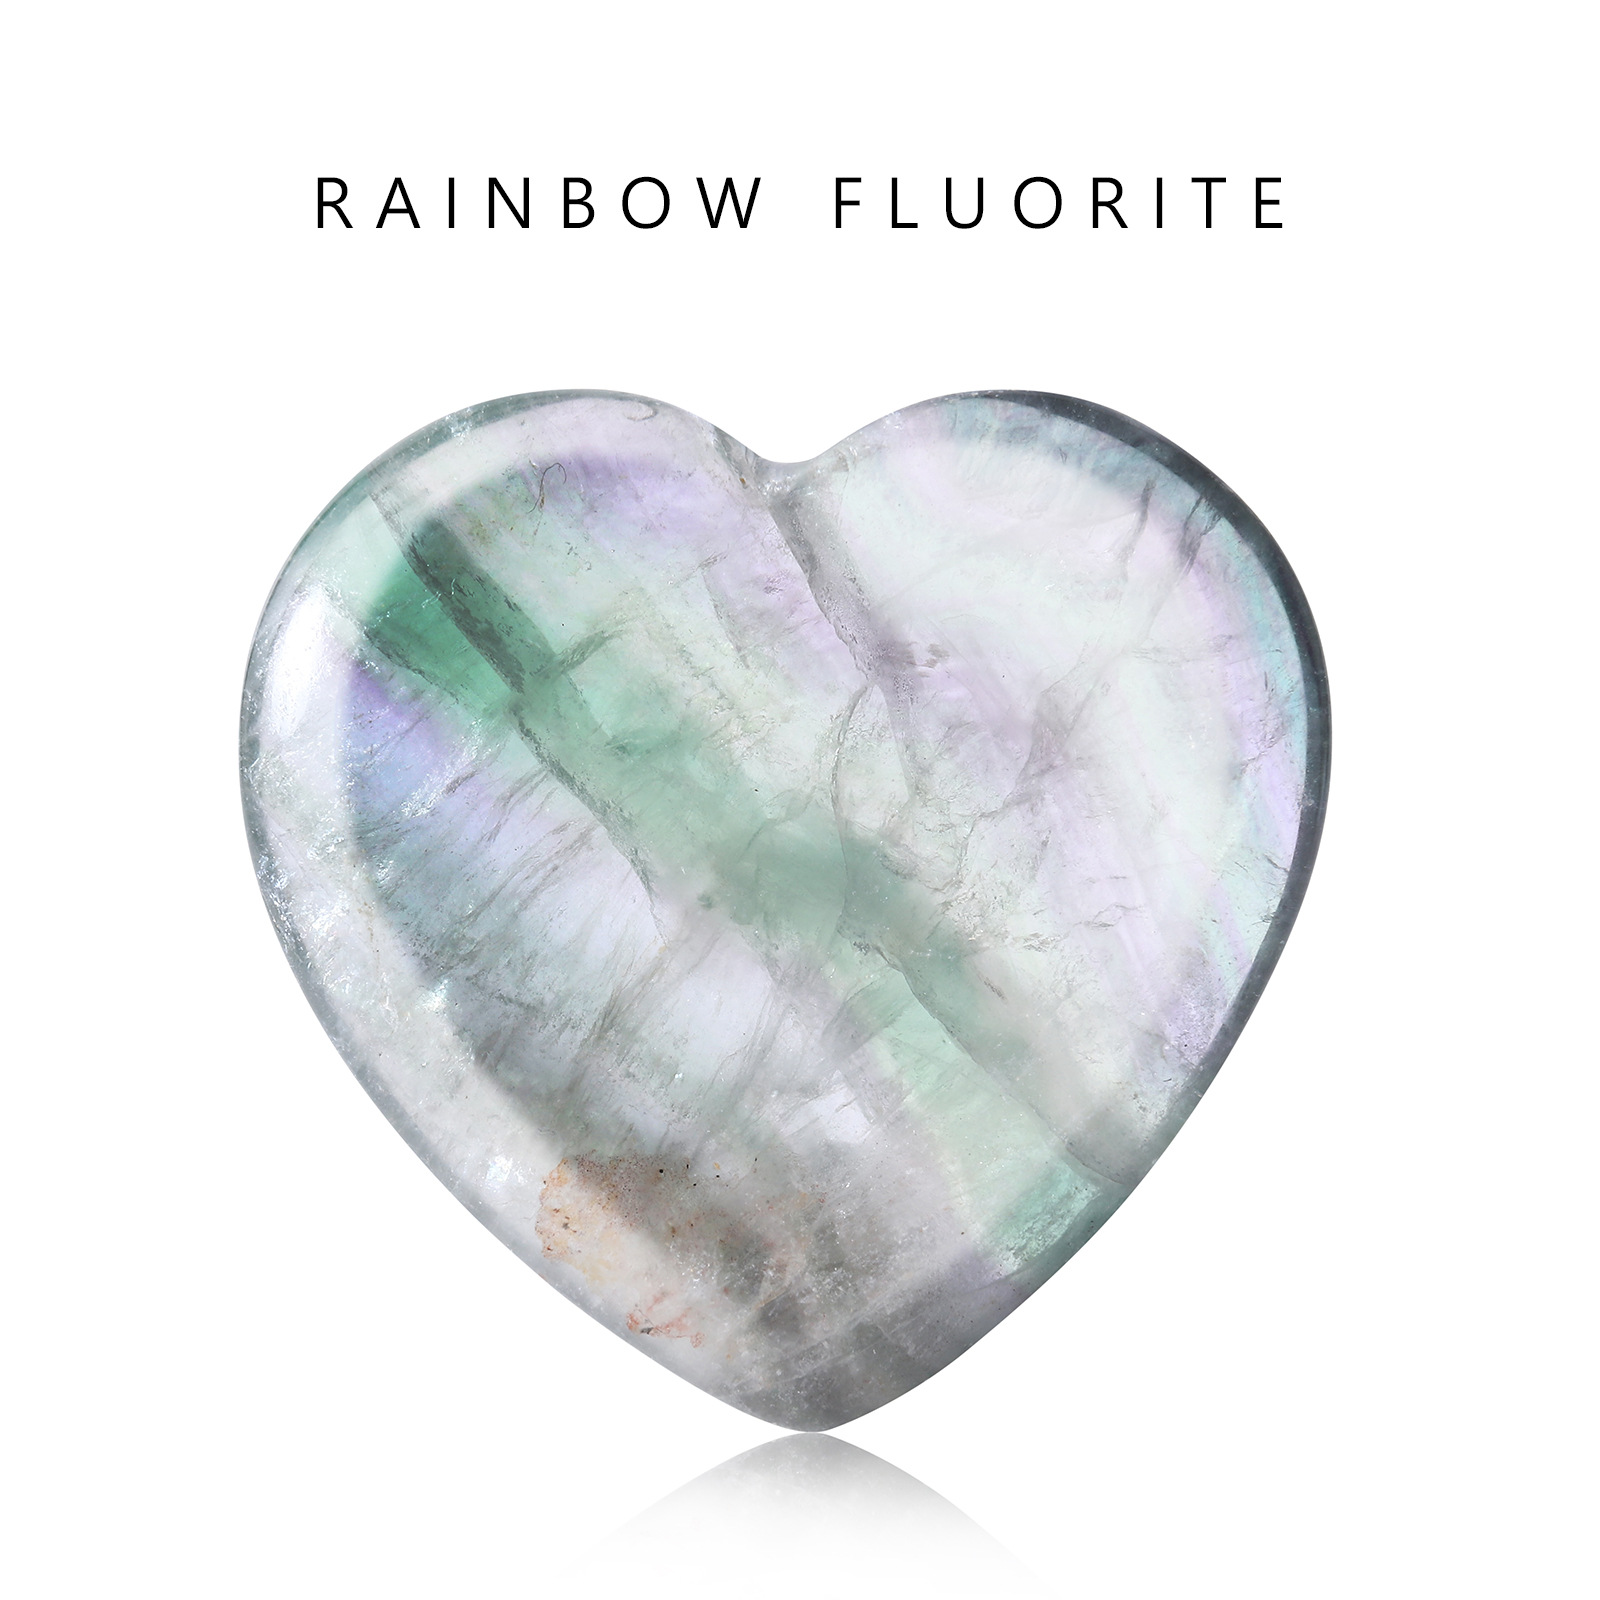 Colored Fluorite